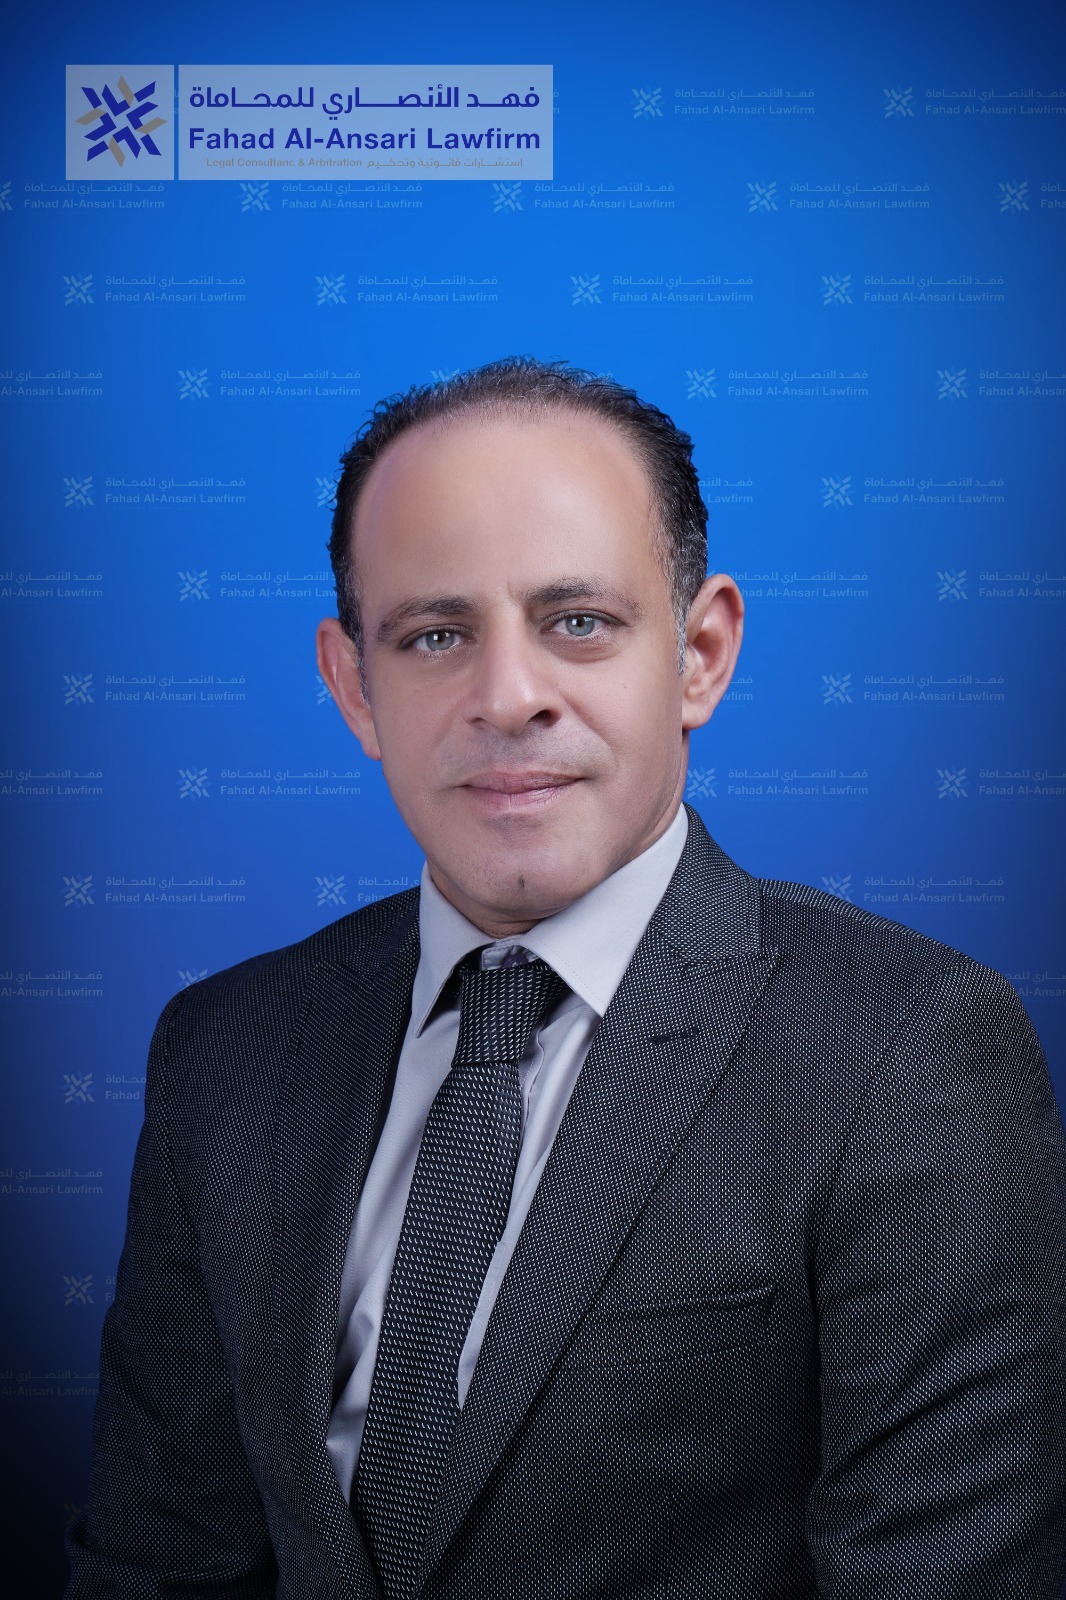 Mohamed Zakaria El-Sawy